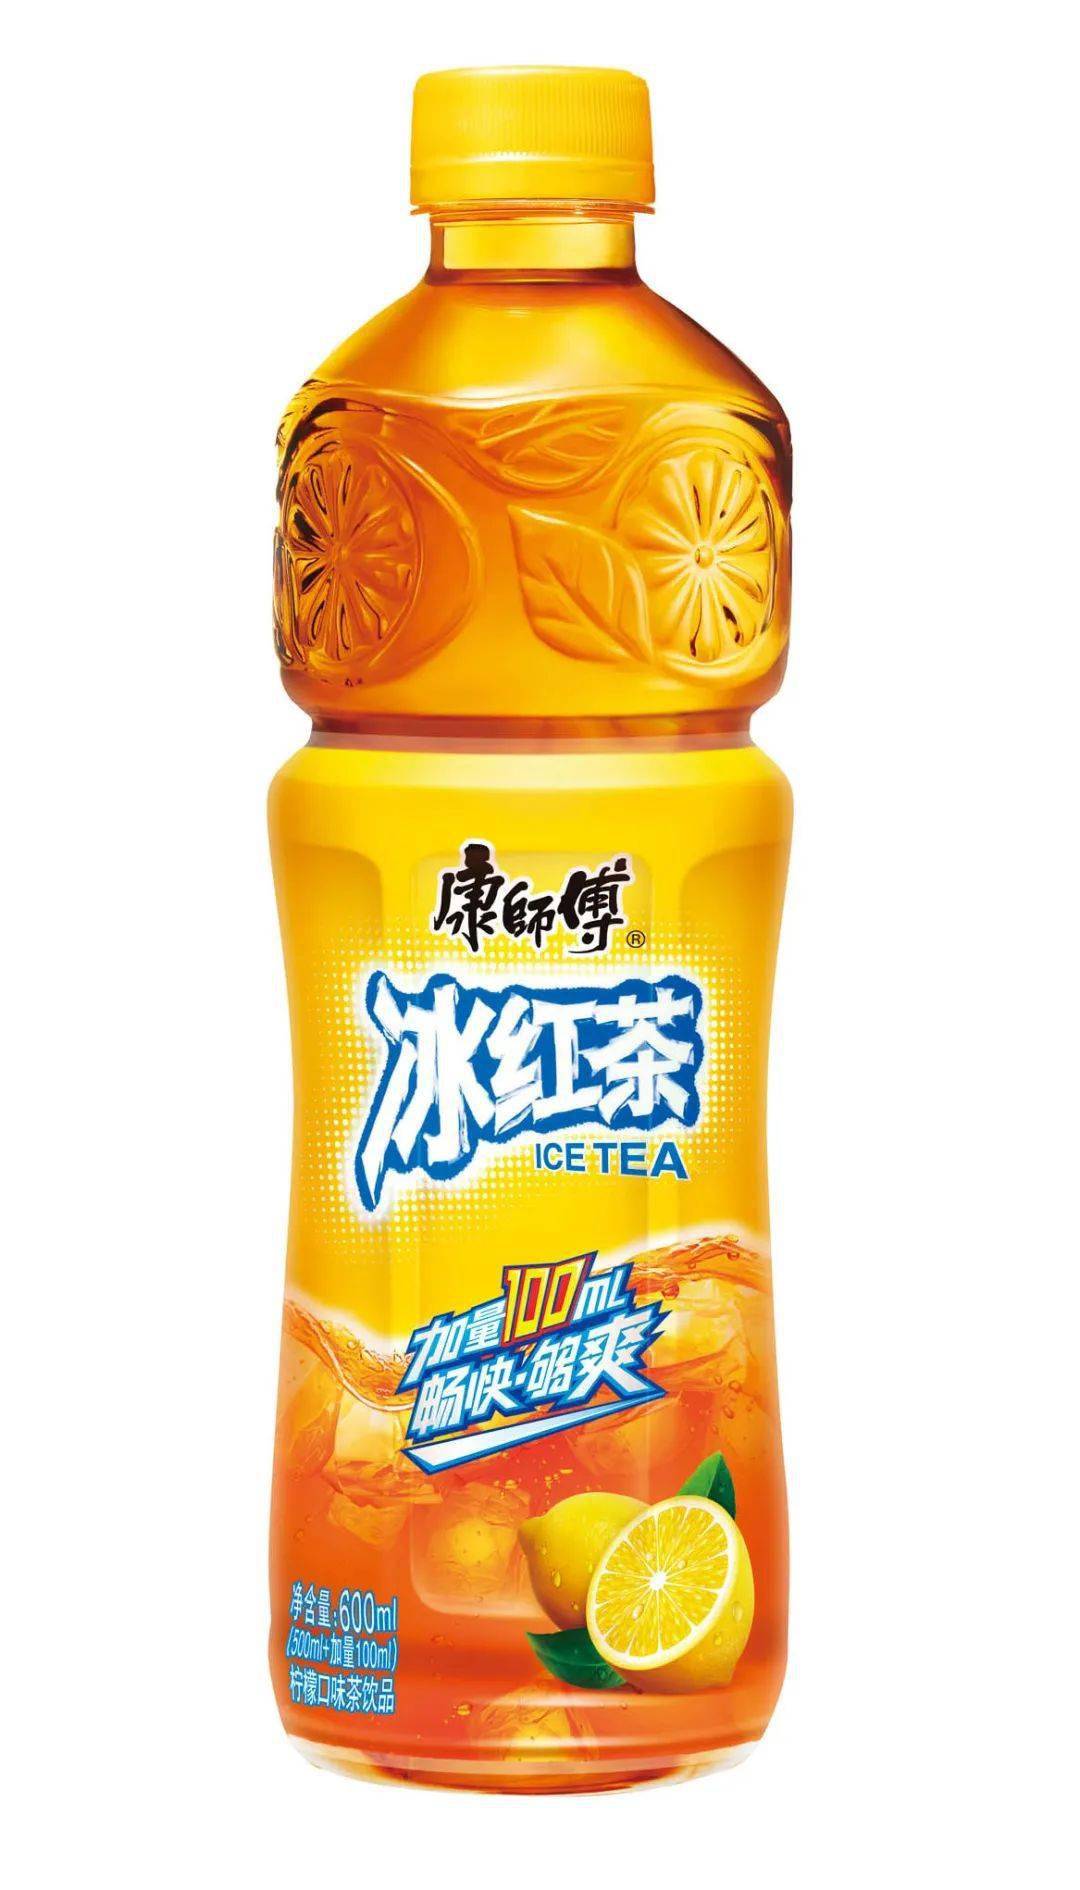 康师傅劲凉冰红茶 500ml KSF Ice Red Tea | UNIMART ASIAN SUPERMARKET